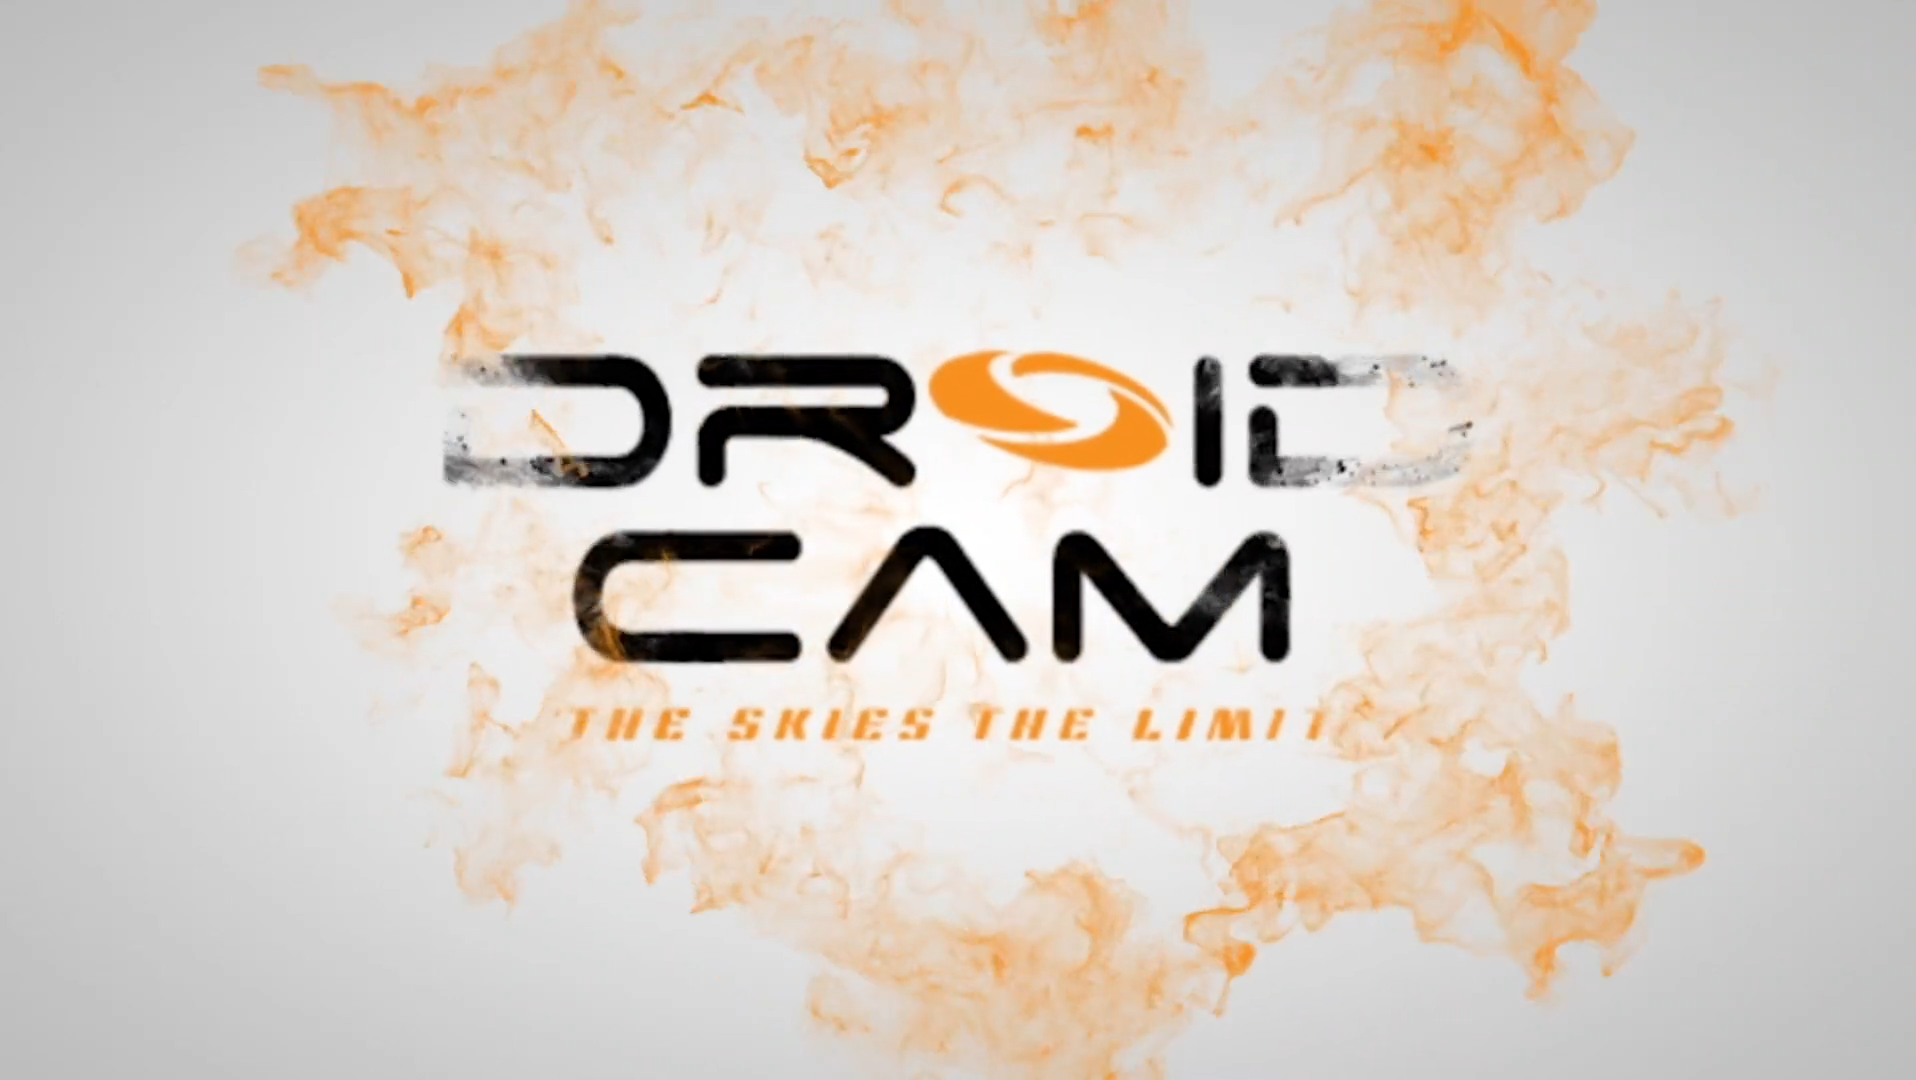 (c) Droid-cam.com